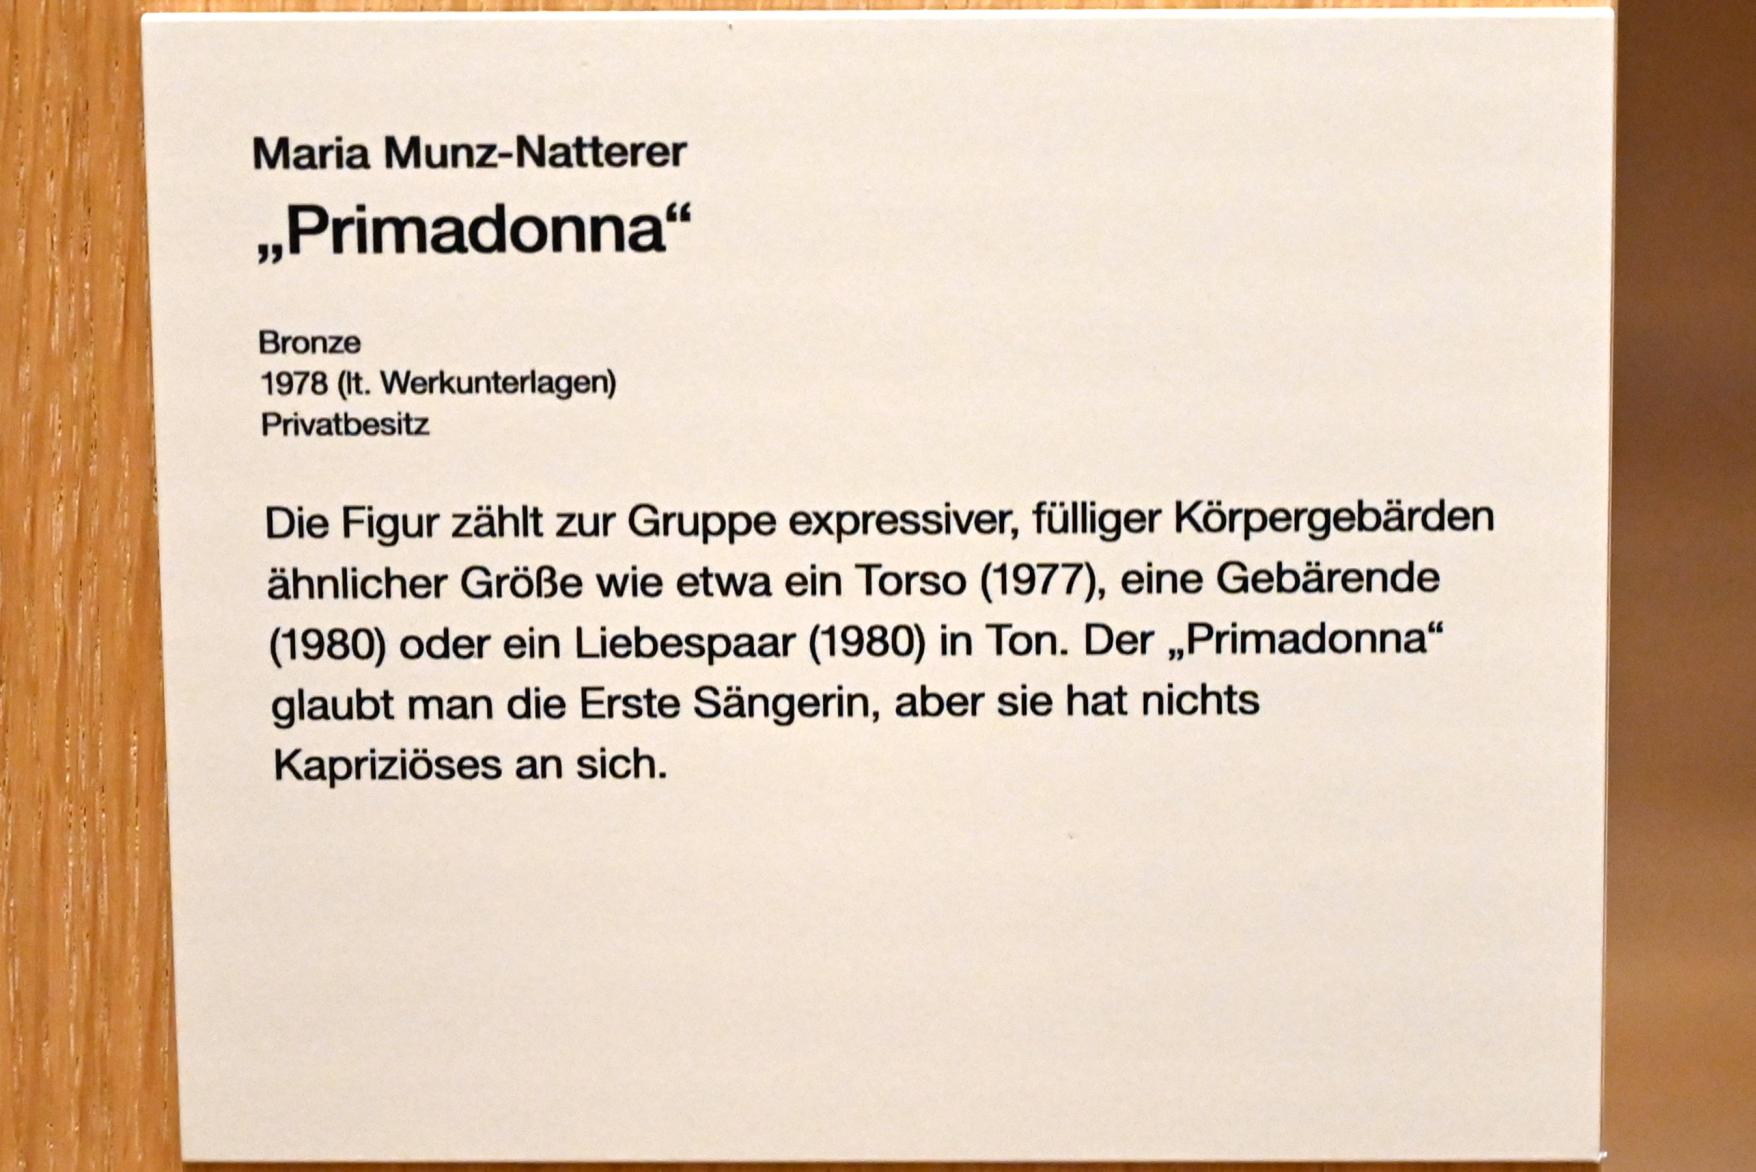 Maria Munz-Natterer (1970–1988), Primadonna, Erding, Museum Erding, Erdinger Künstler, 1978, Bild 4/4